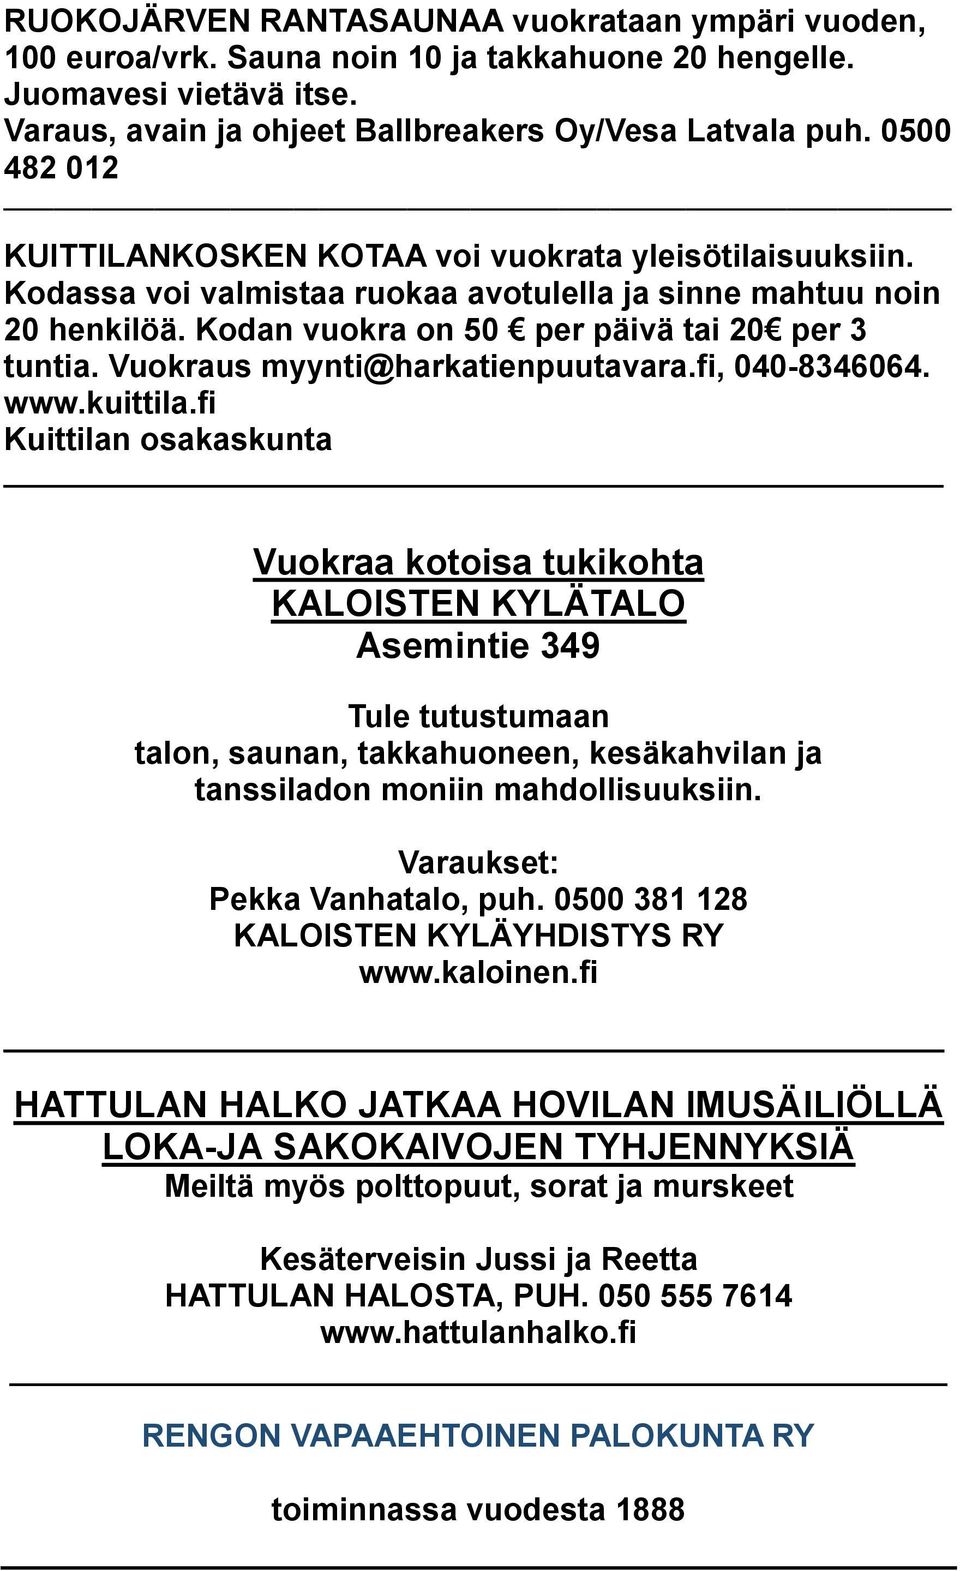 Vuokraus myynti@harkatienpuutavara.fi, 040-8346064. www.kuittila.